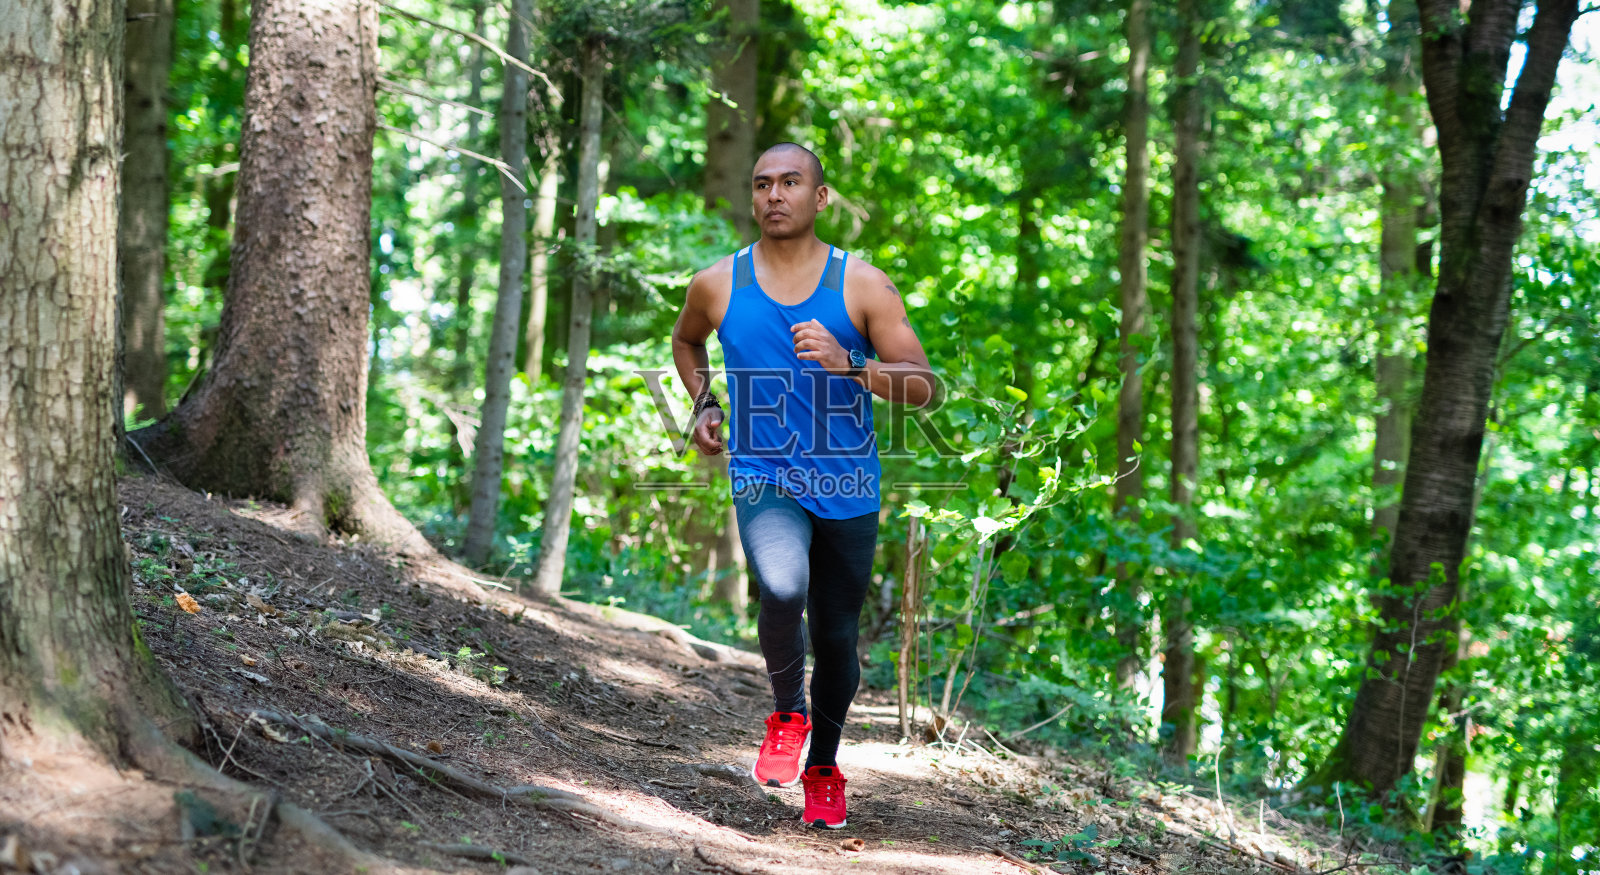 森林里奔跑者的照片照片摄影图片